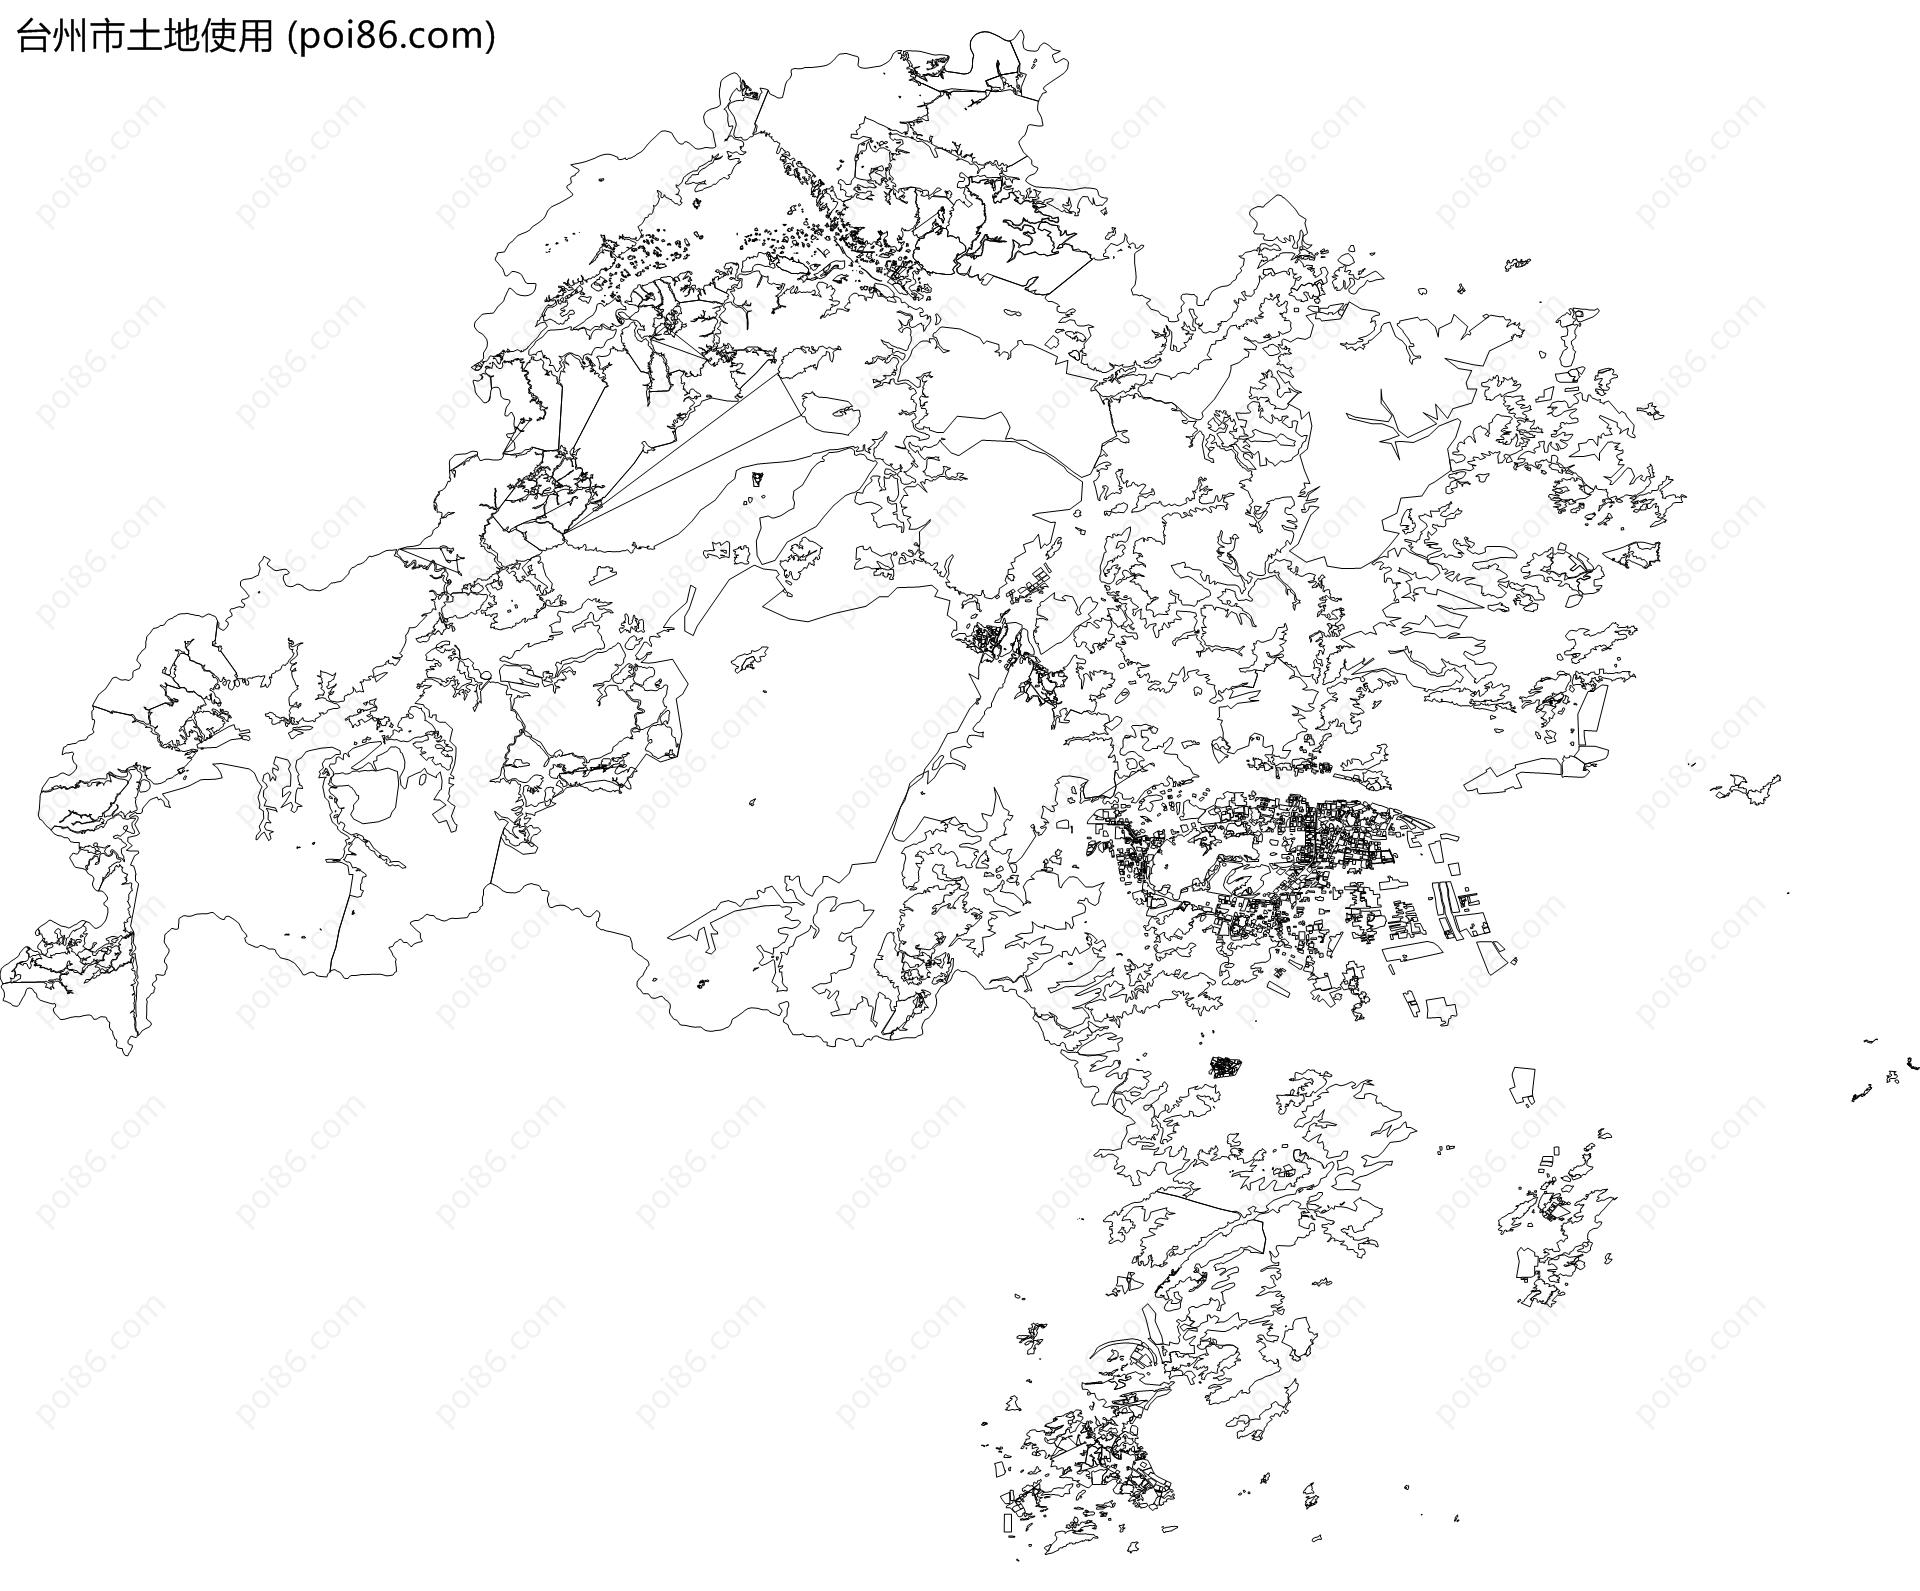 台州市土地使用地图